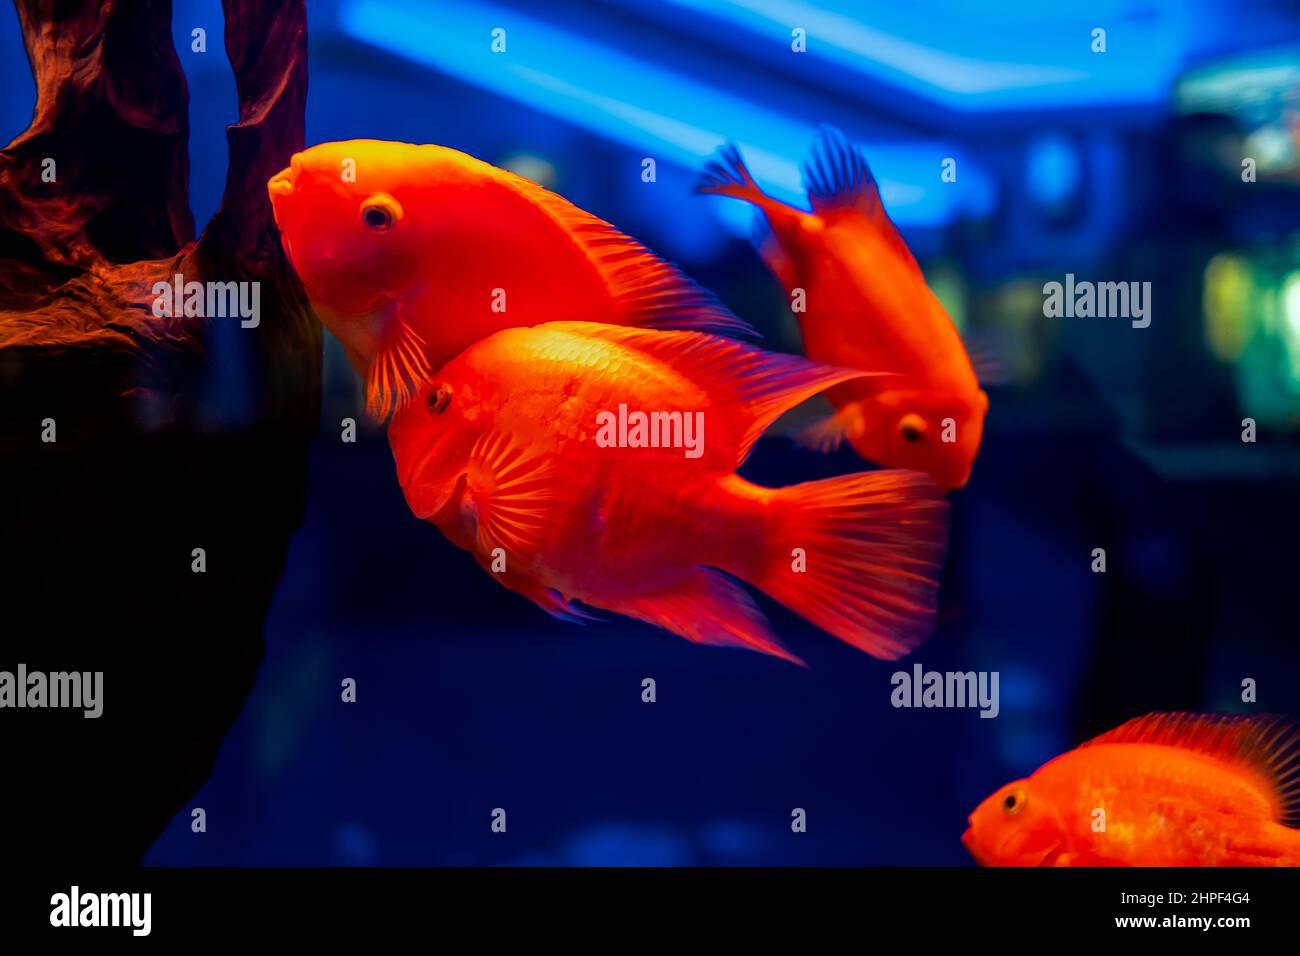 tropical fish in the aquarium fish red parrot swim Stock Photo